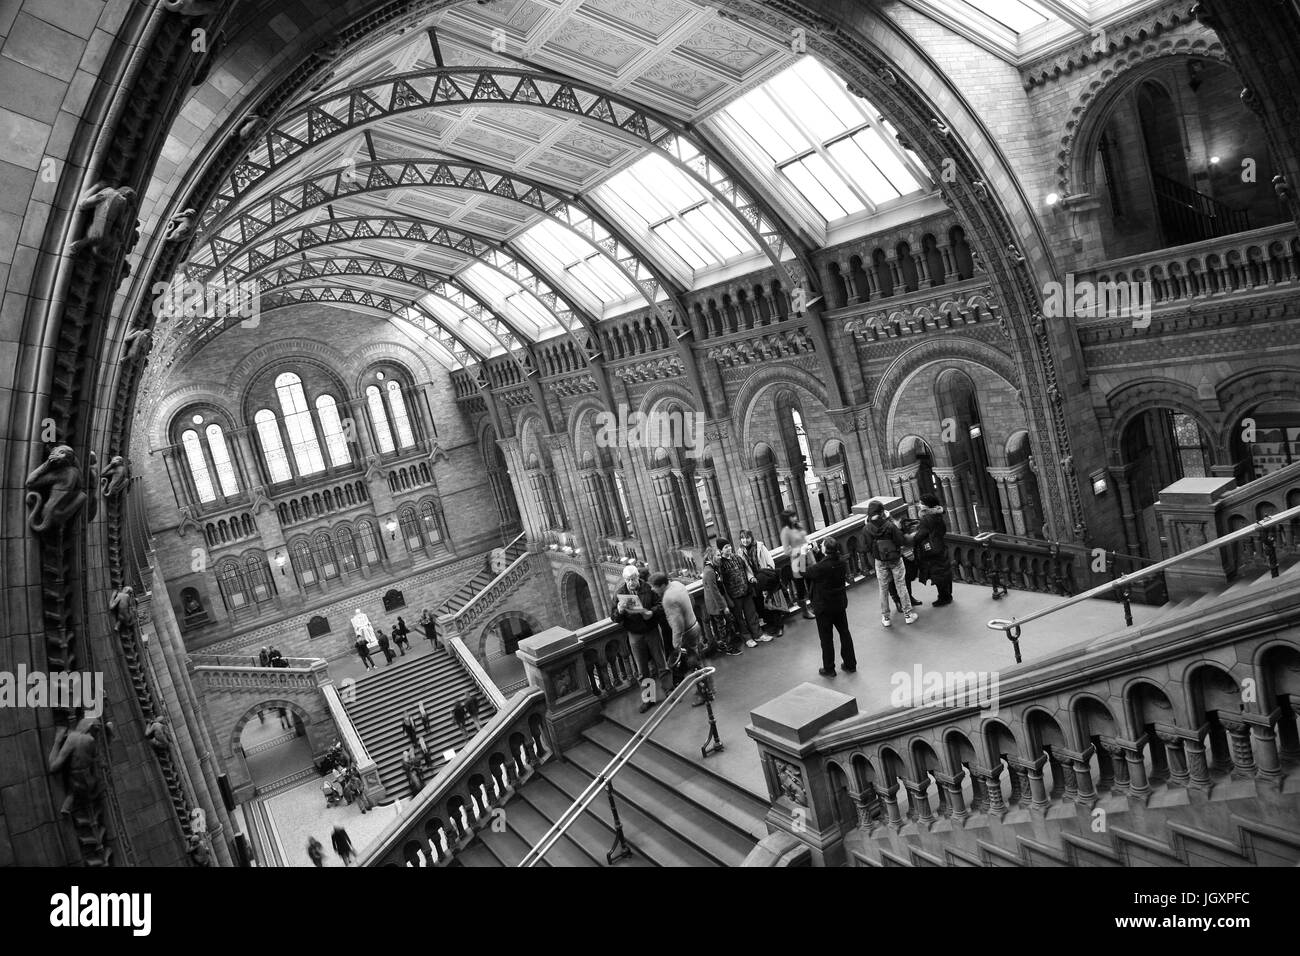 Londres, Royaume-Uni - 11 janvier 2011 : vue de l'intérieur du Musée d'histoire naturelle, les visiteurs prennent des photos de groupe. Ce musée est l'un des plus préférés muse Banque D'Images